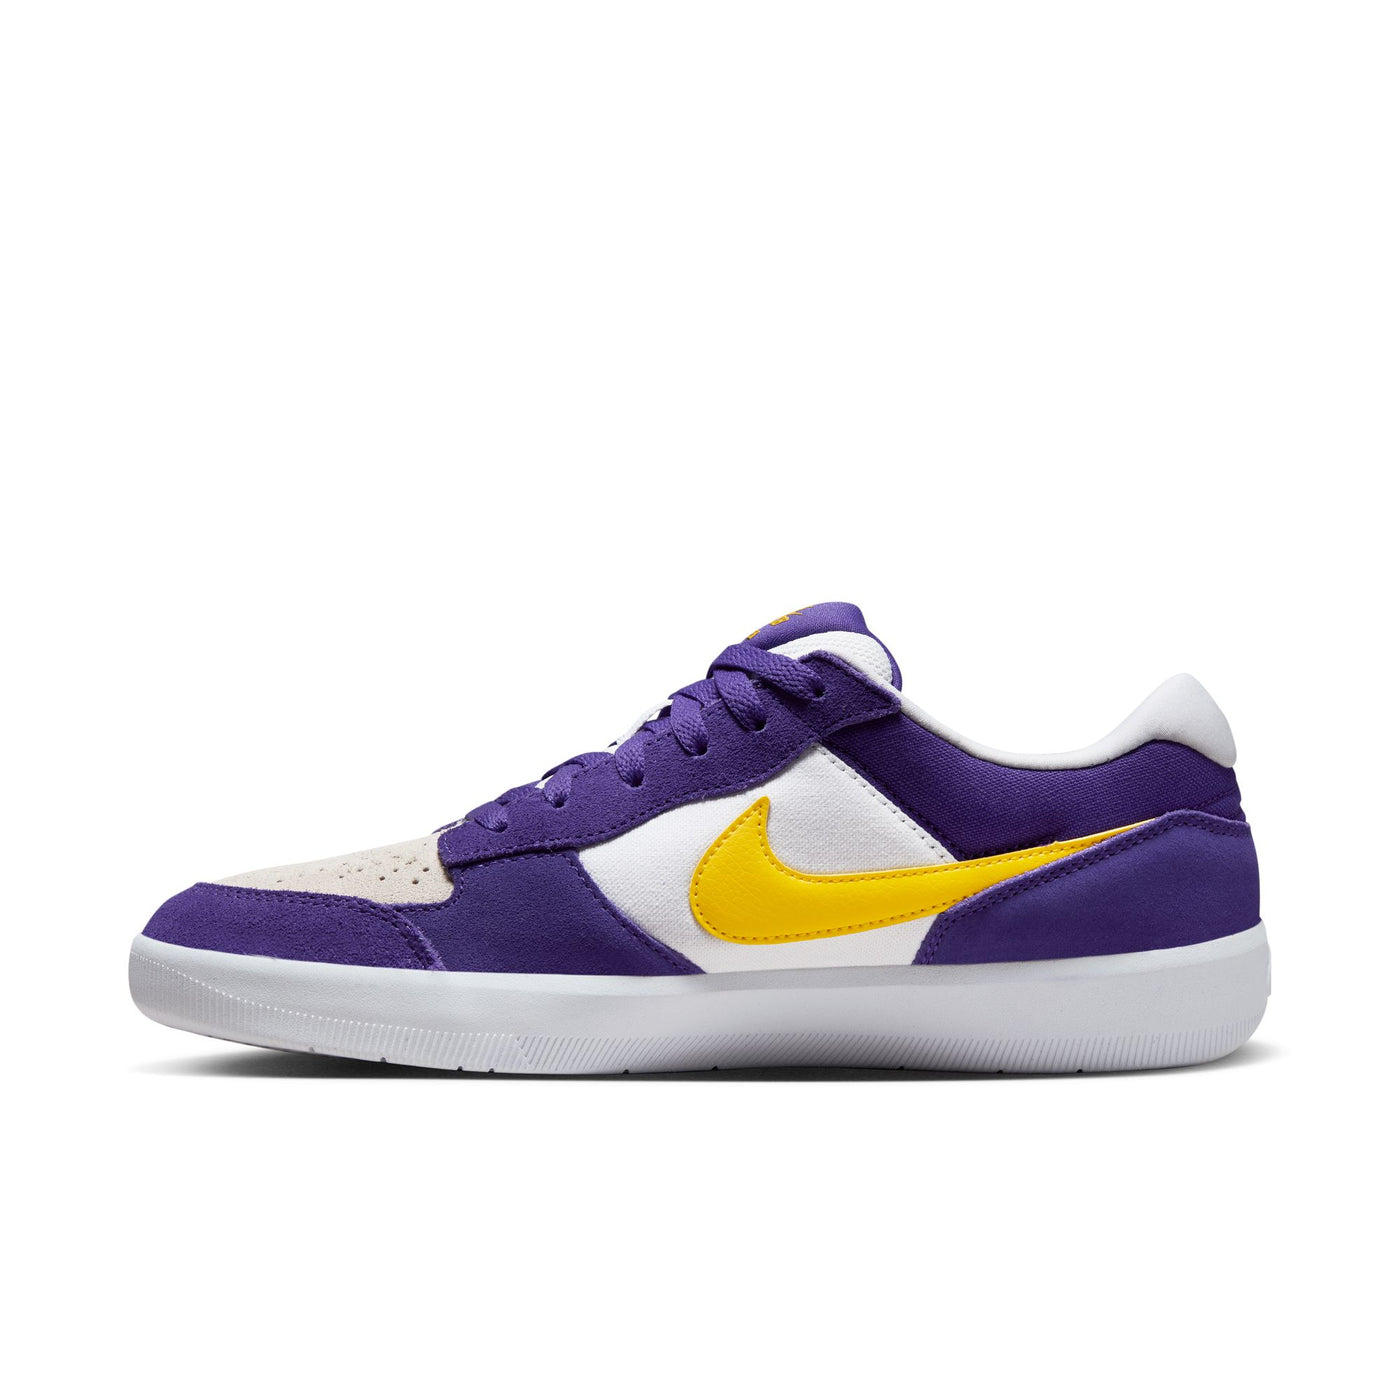 Nike SB 5477 Force 58 - DV5477 - 500 - Purple / White / Yellow